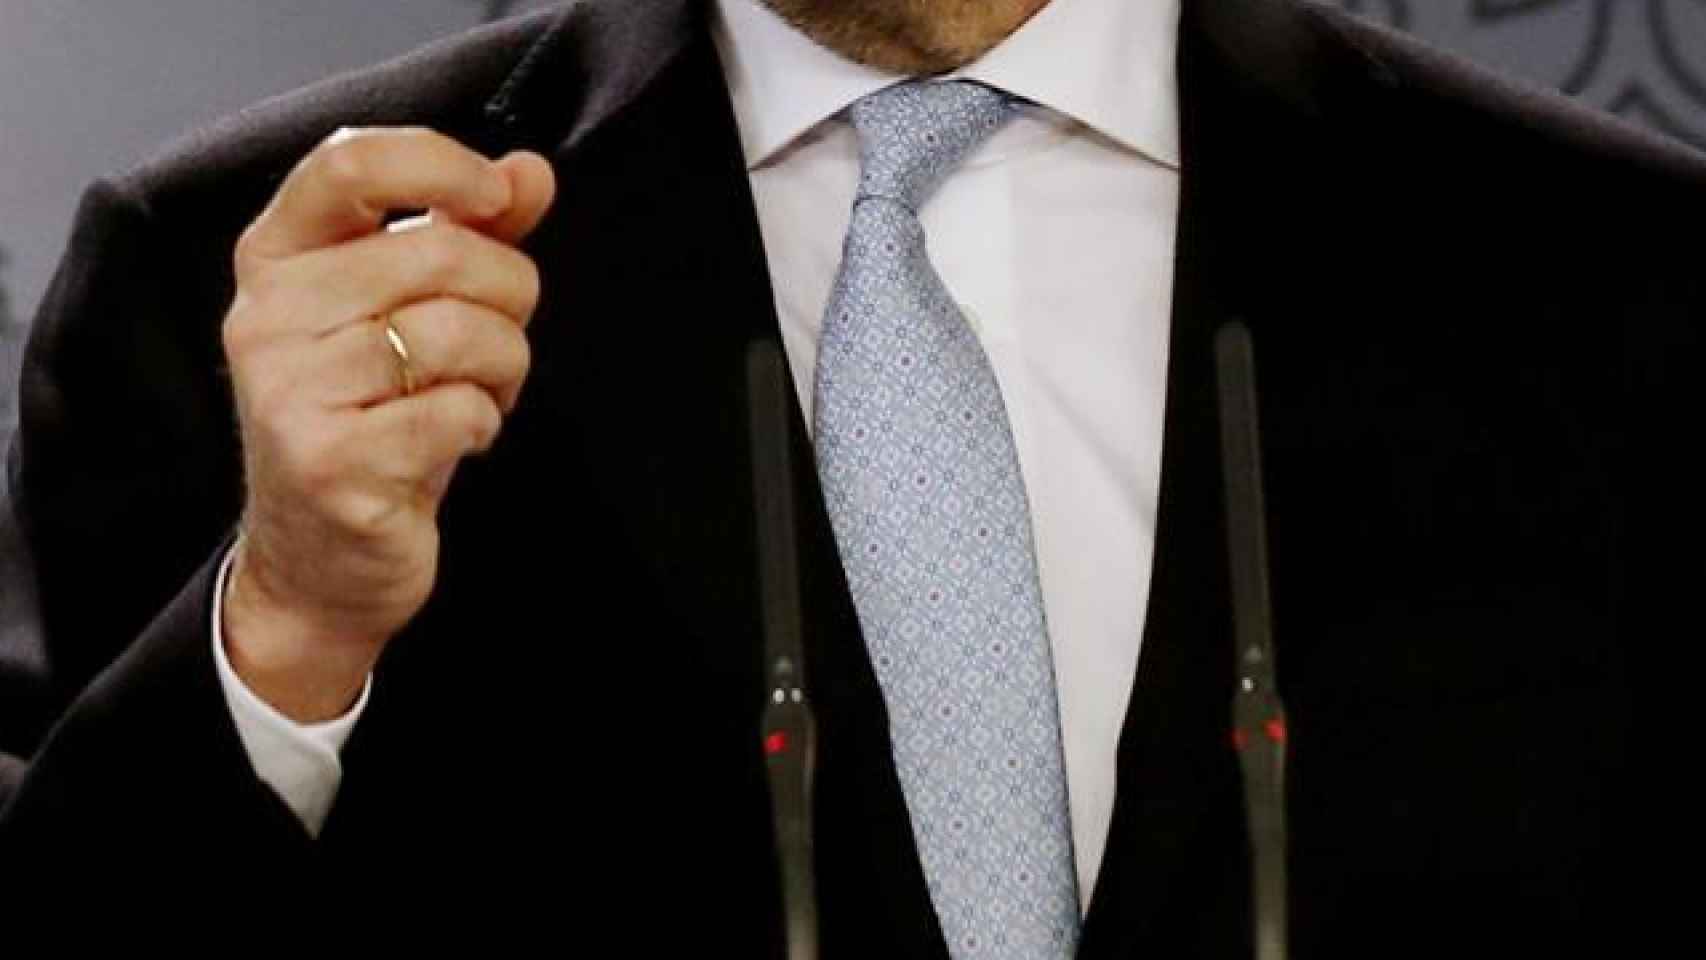 Mariano Rajoy con la corbata torcida durante la rueda de prensa